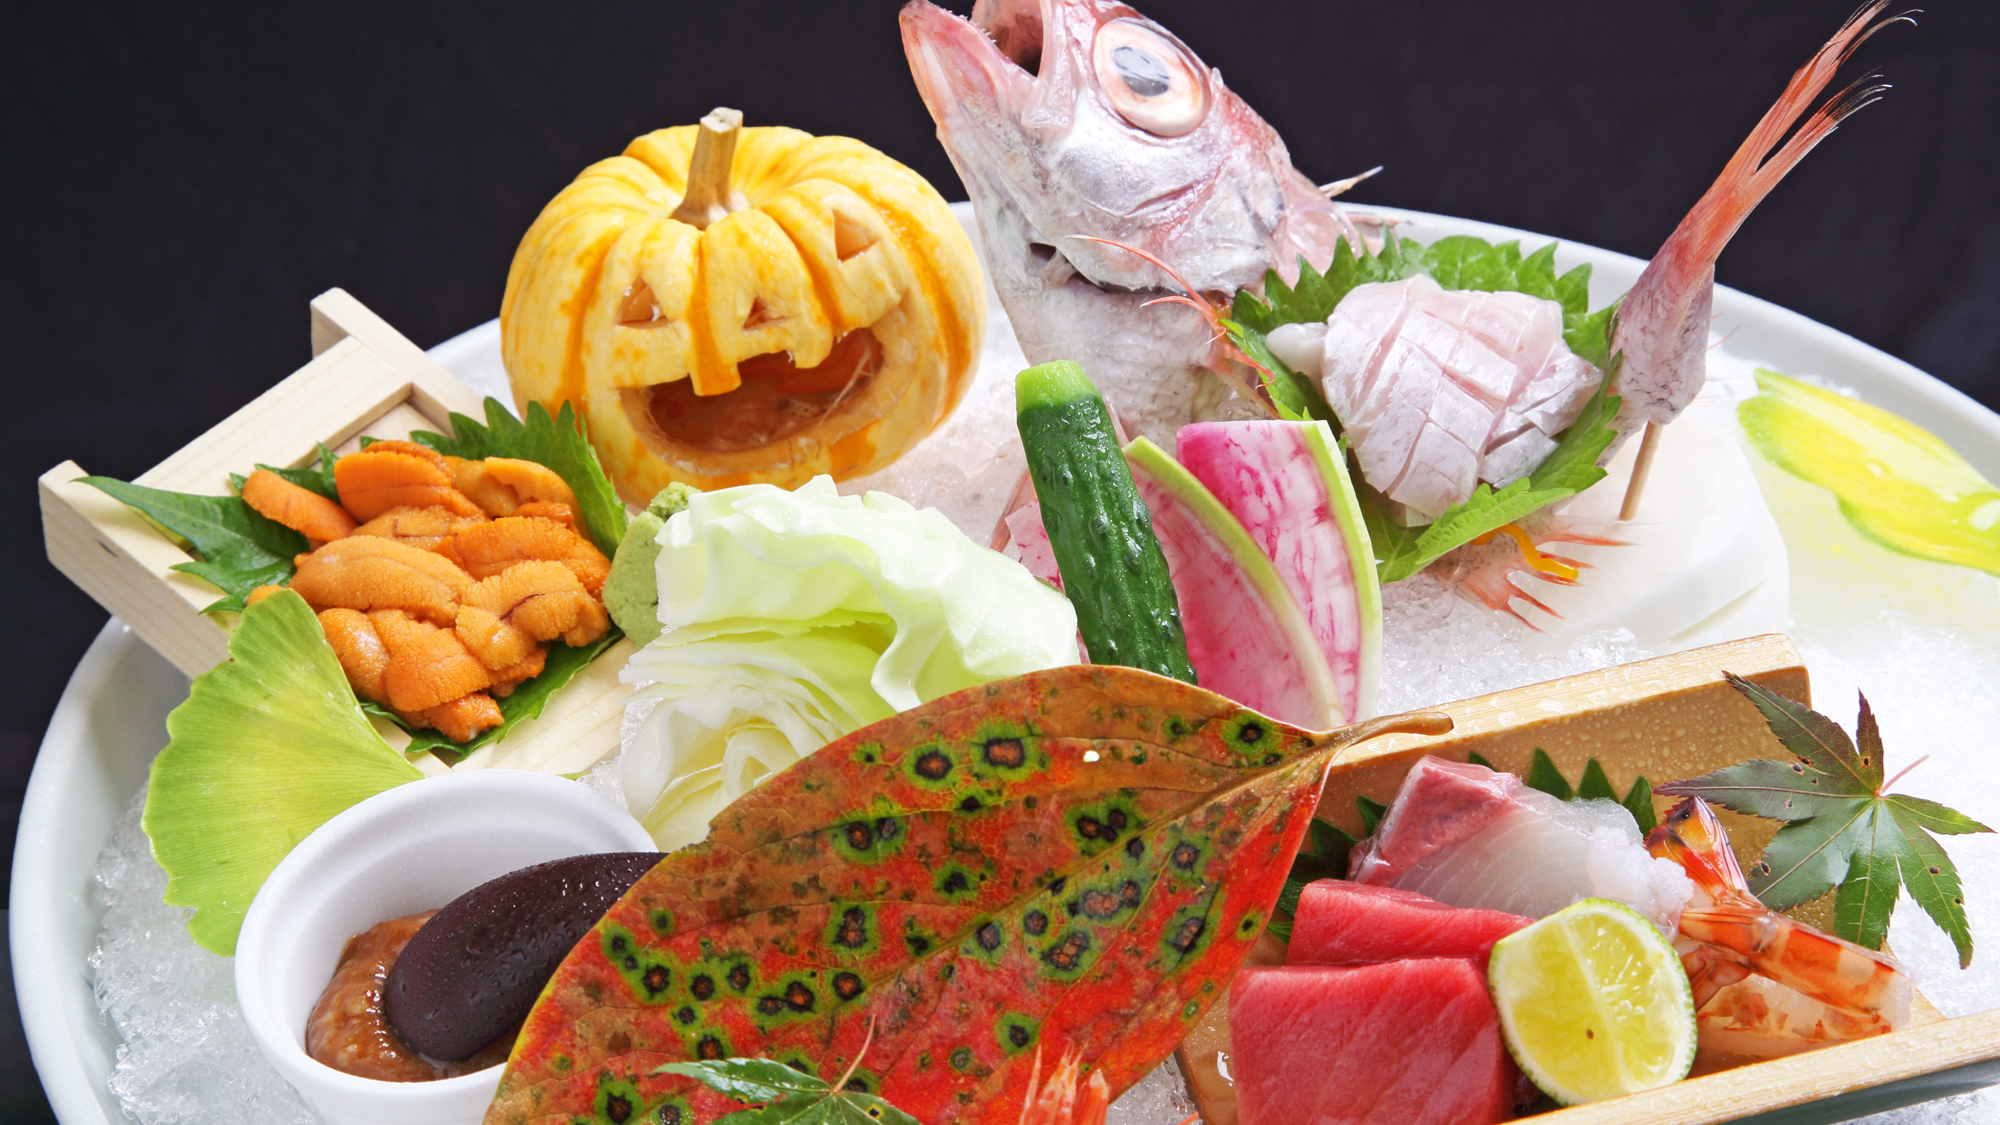 【夕食・造里】秋の一例・のどぐろ・雲丹・鮪など旬の新鮮な魚介をご提供します。 